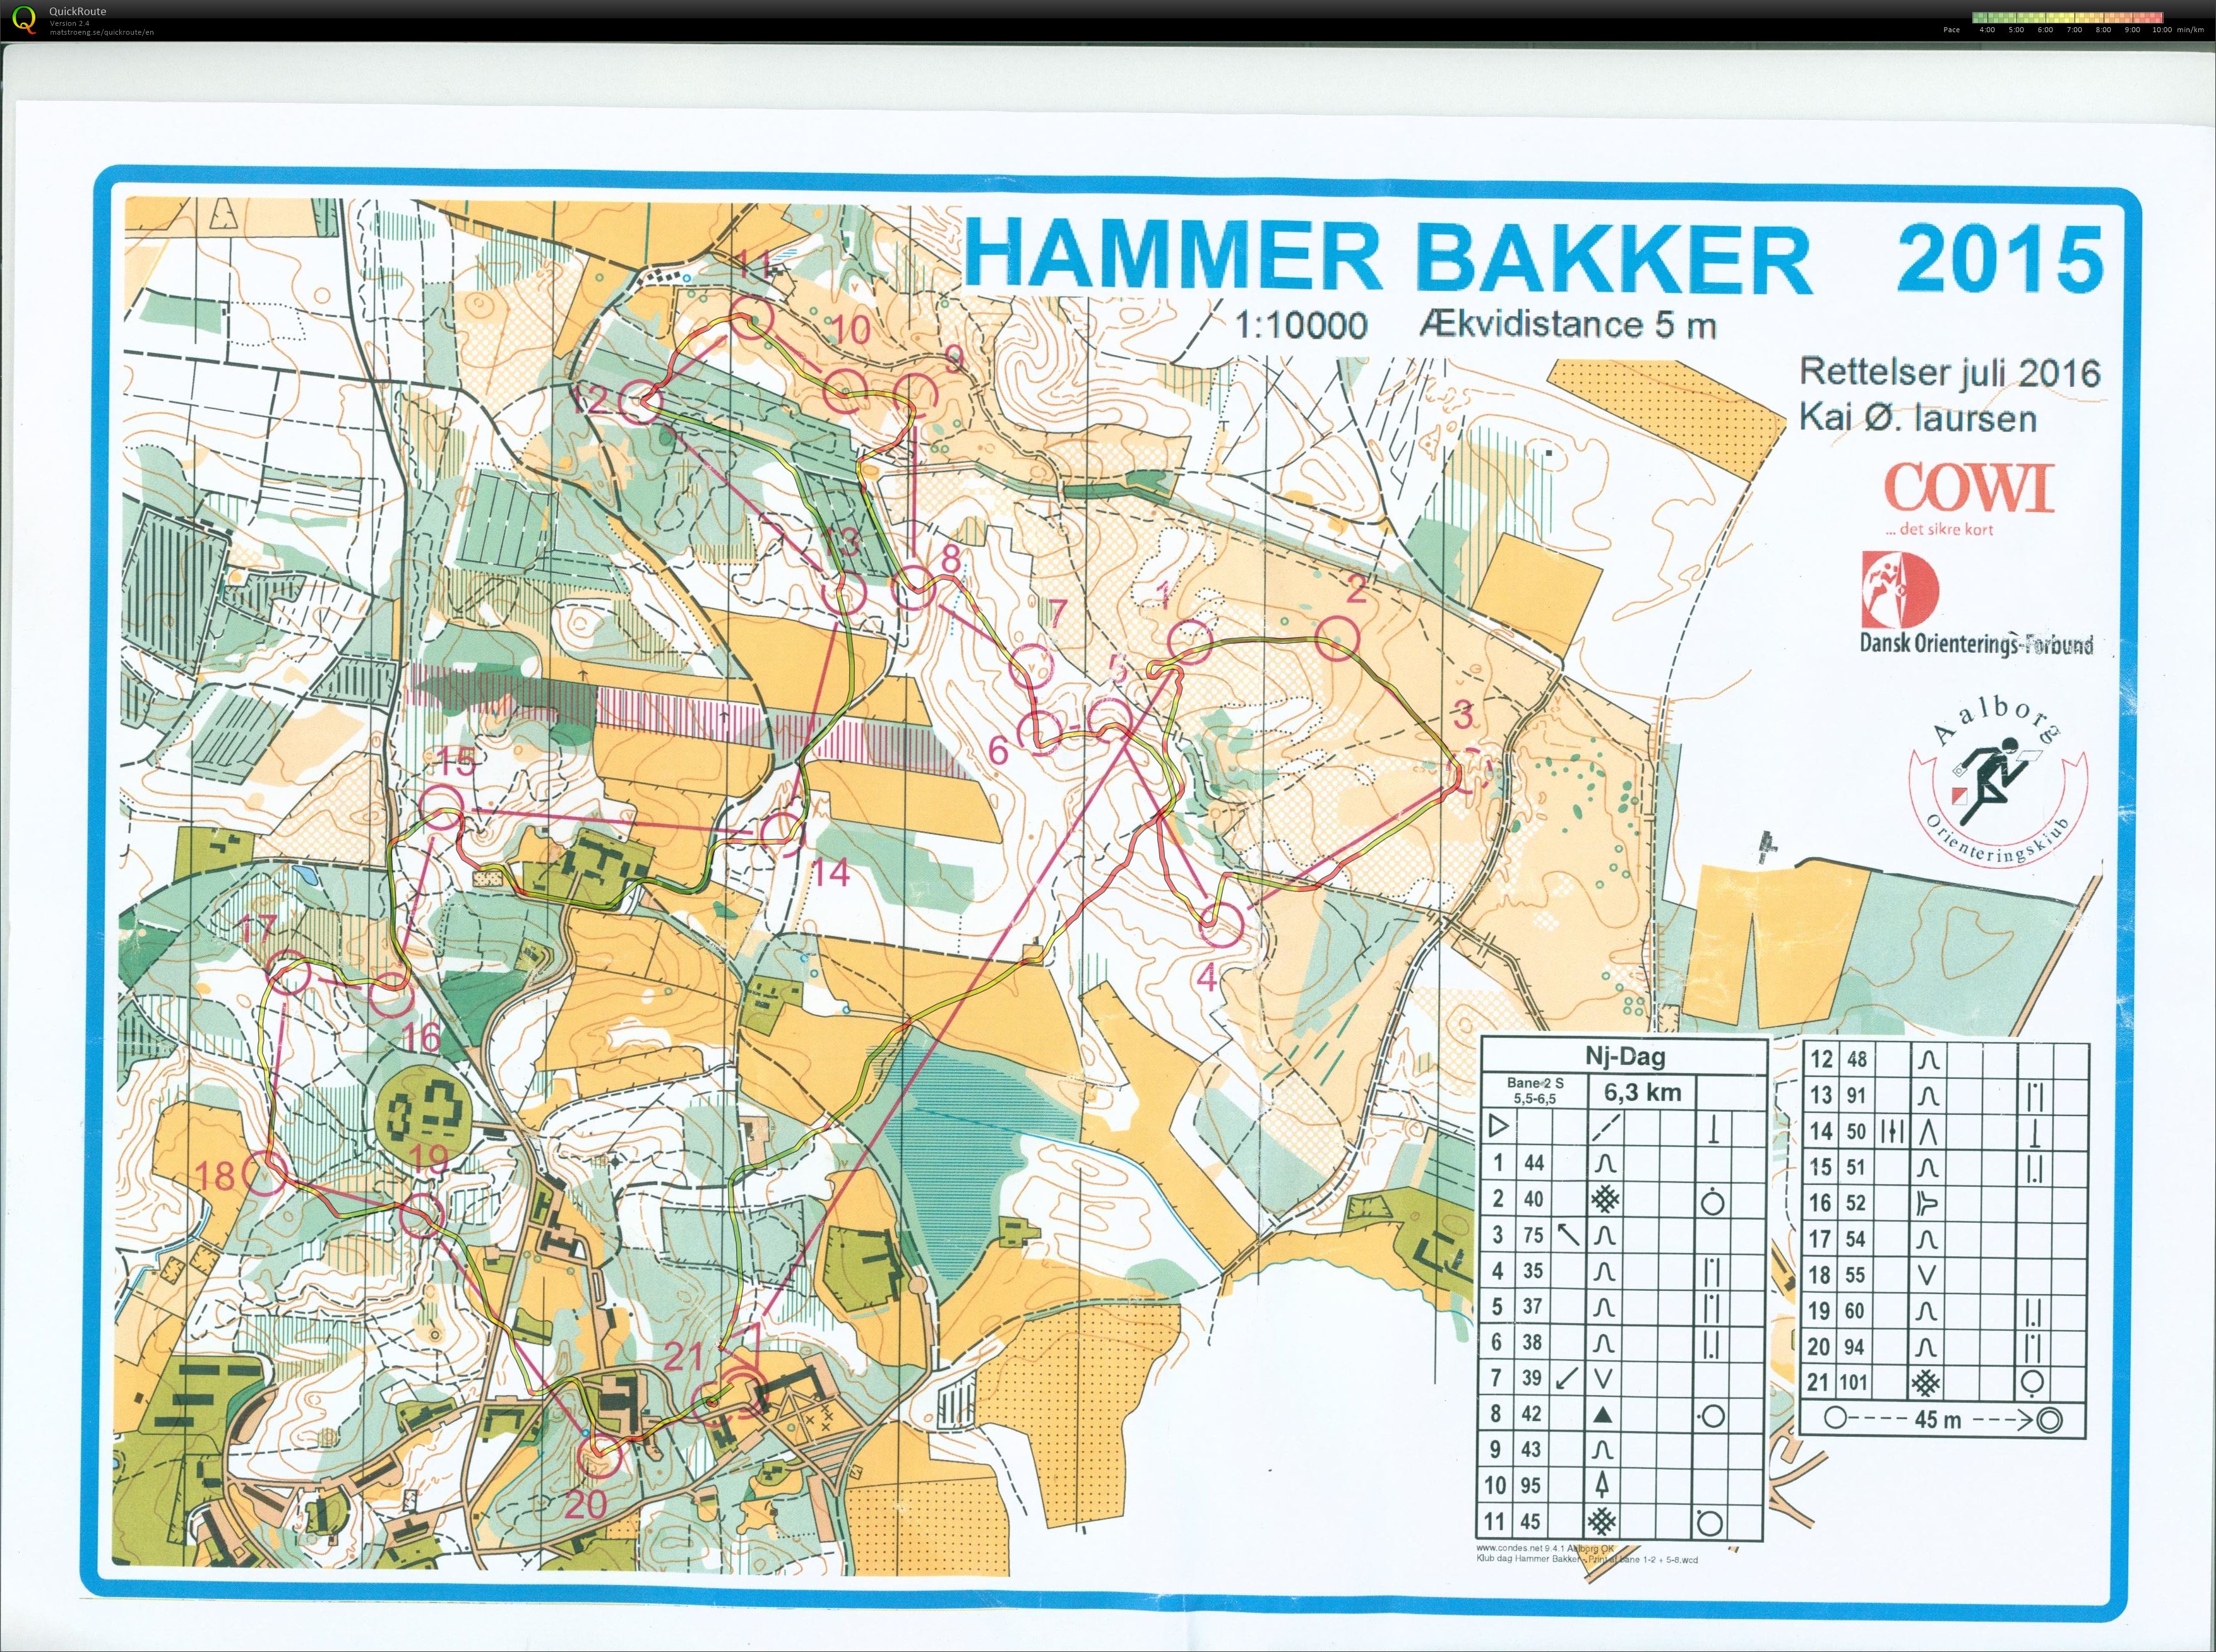 Hammer Bakker bane 2 Keld Gade (13/11/2016)